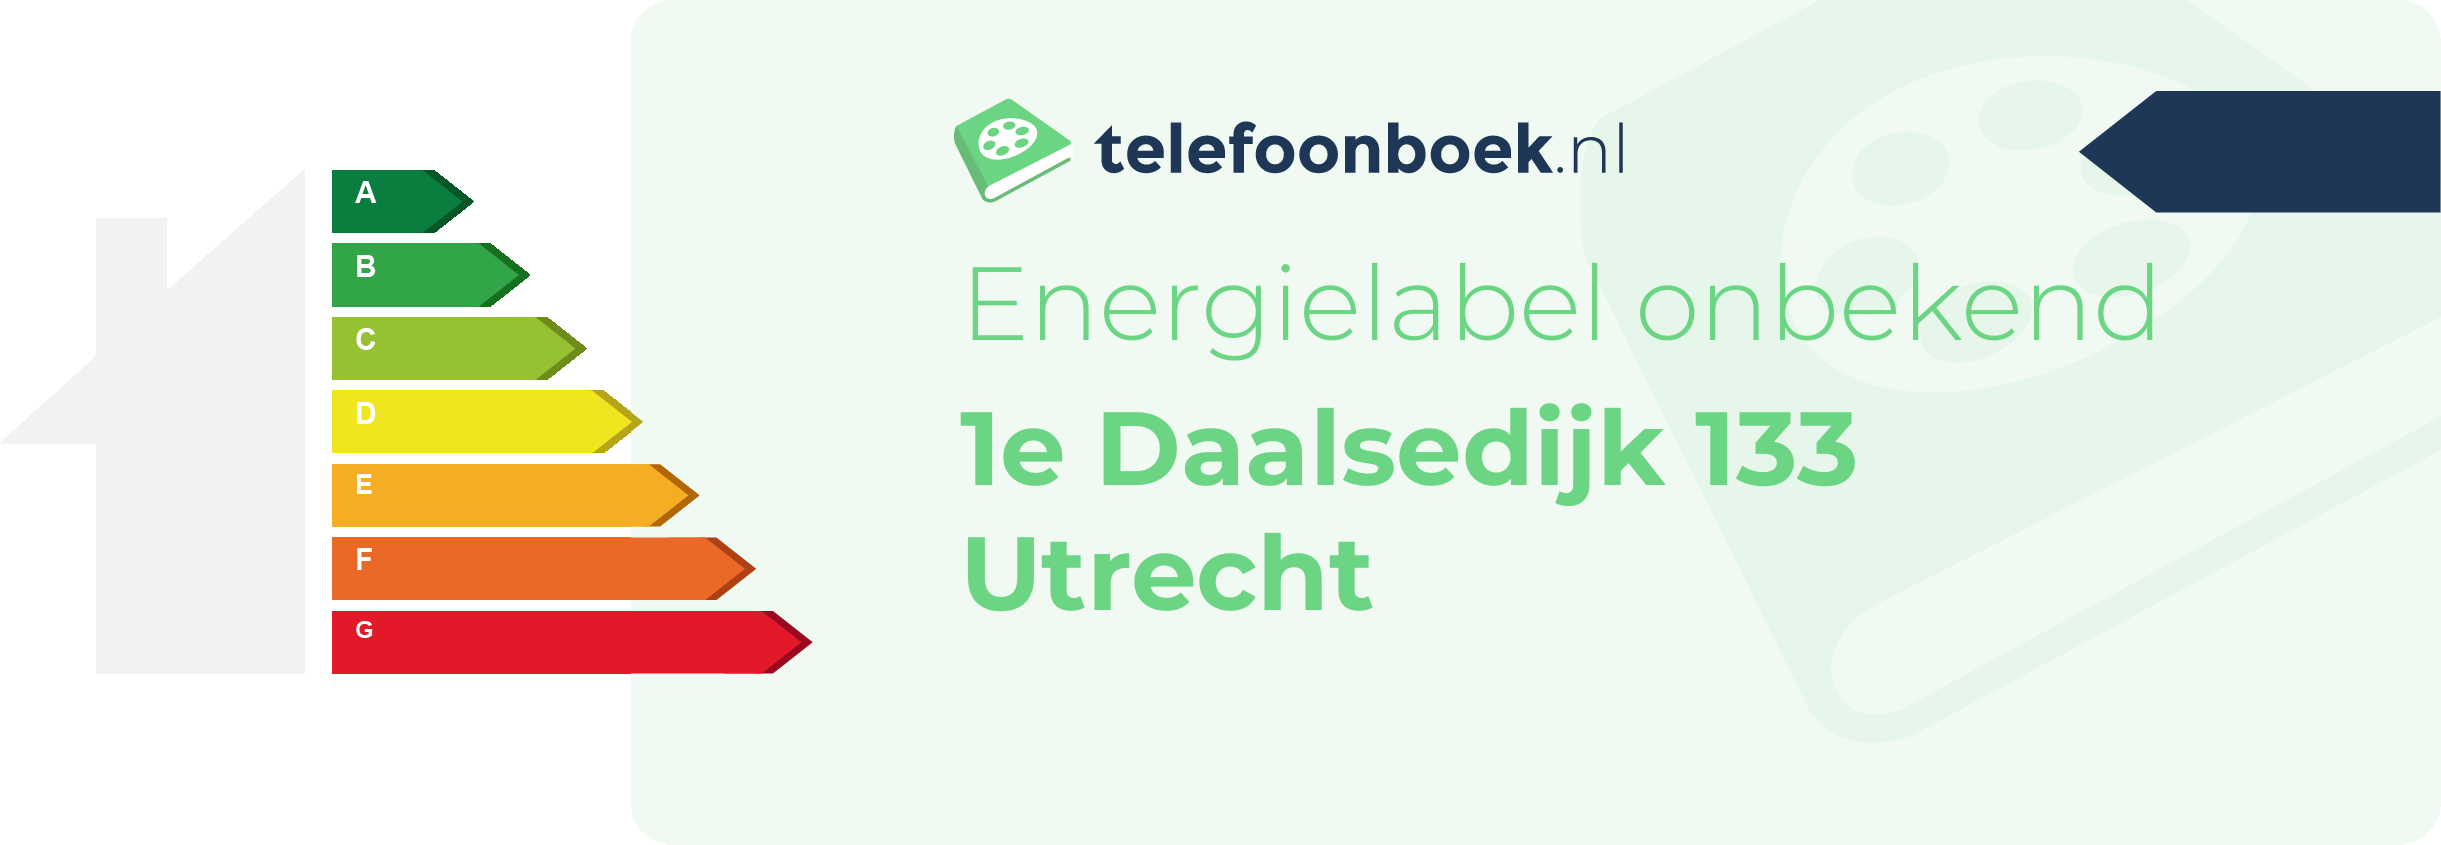 Energielabel 1e Daalsedijk 133 Utrecht